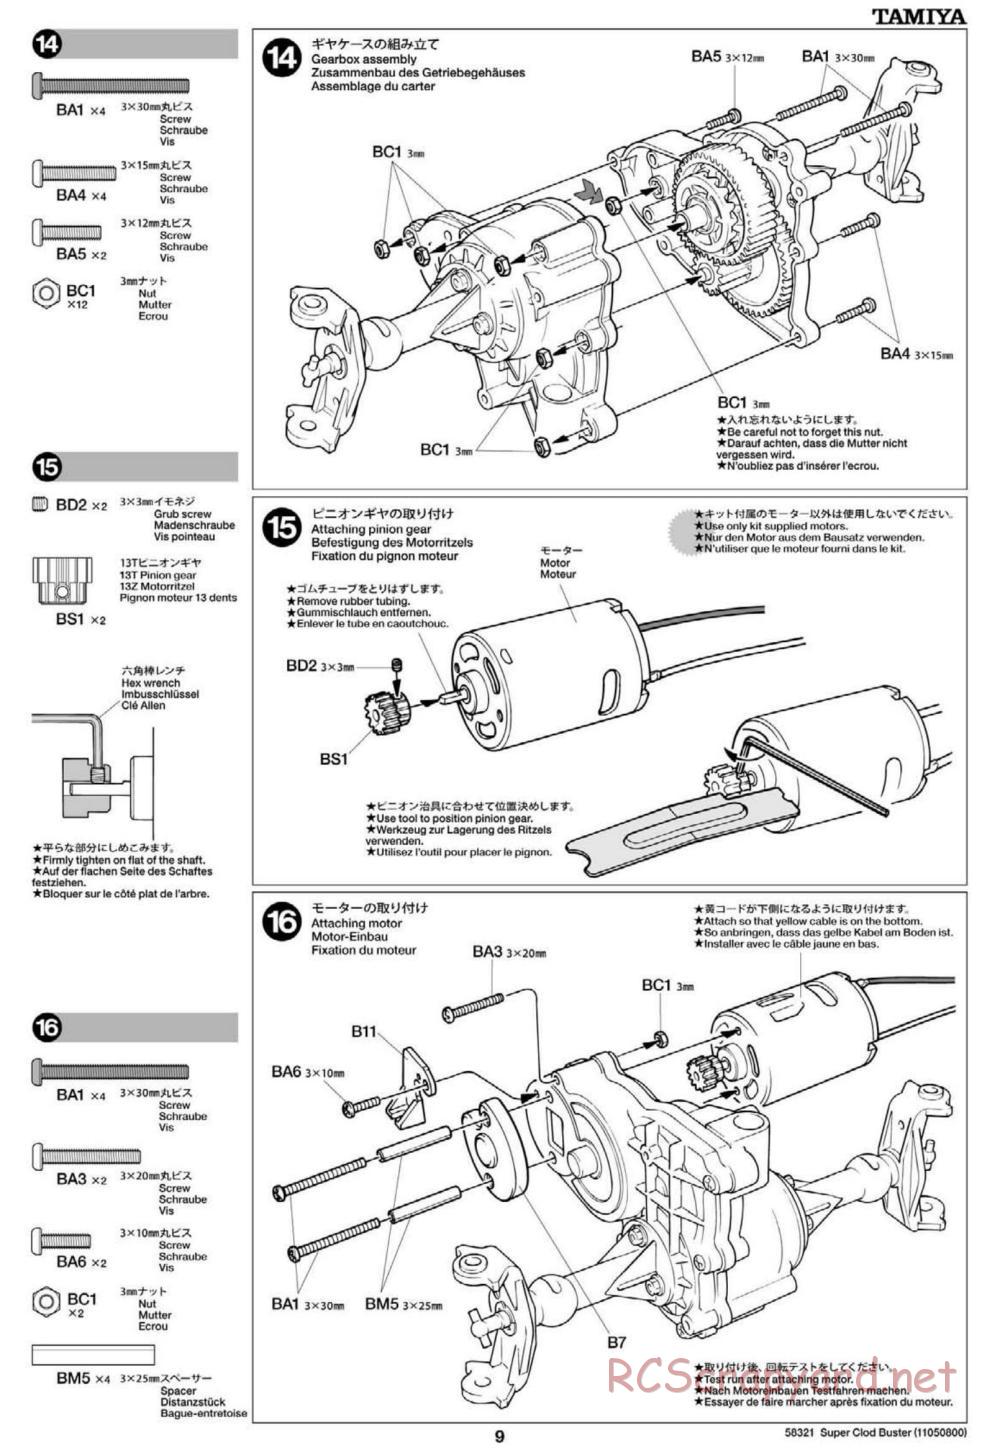 Tamiya - Super Clod Buster Chassis - Manual - Page 9